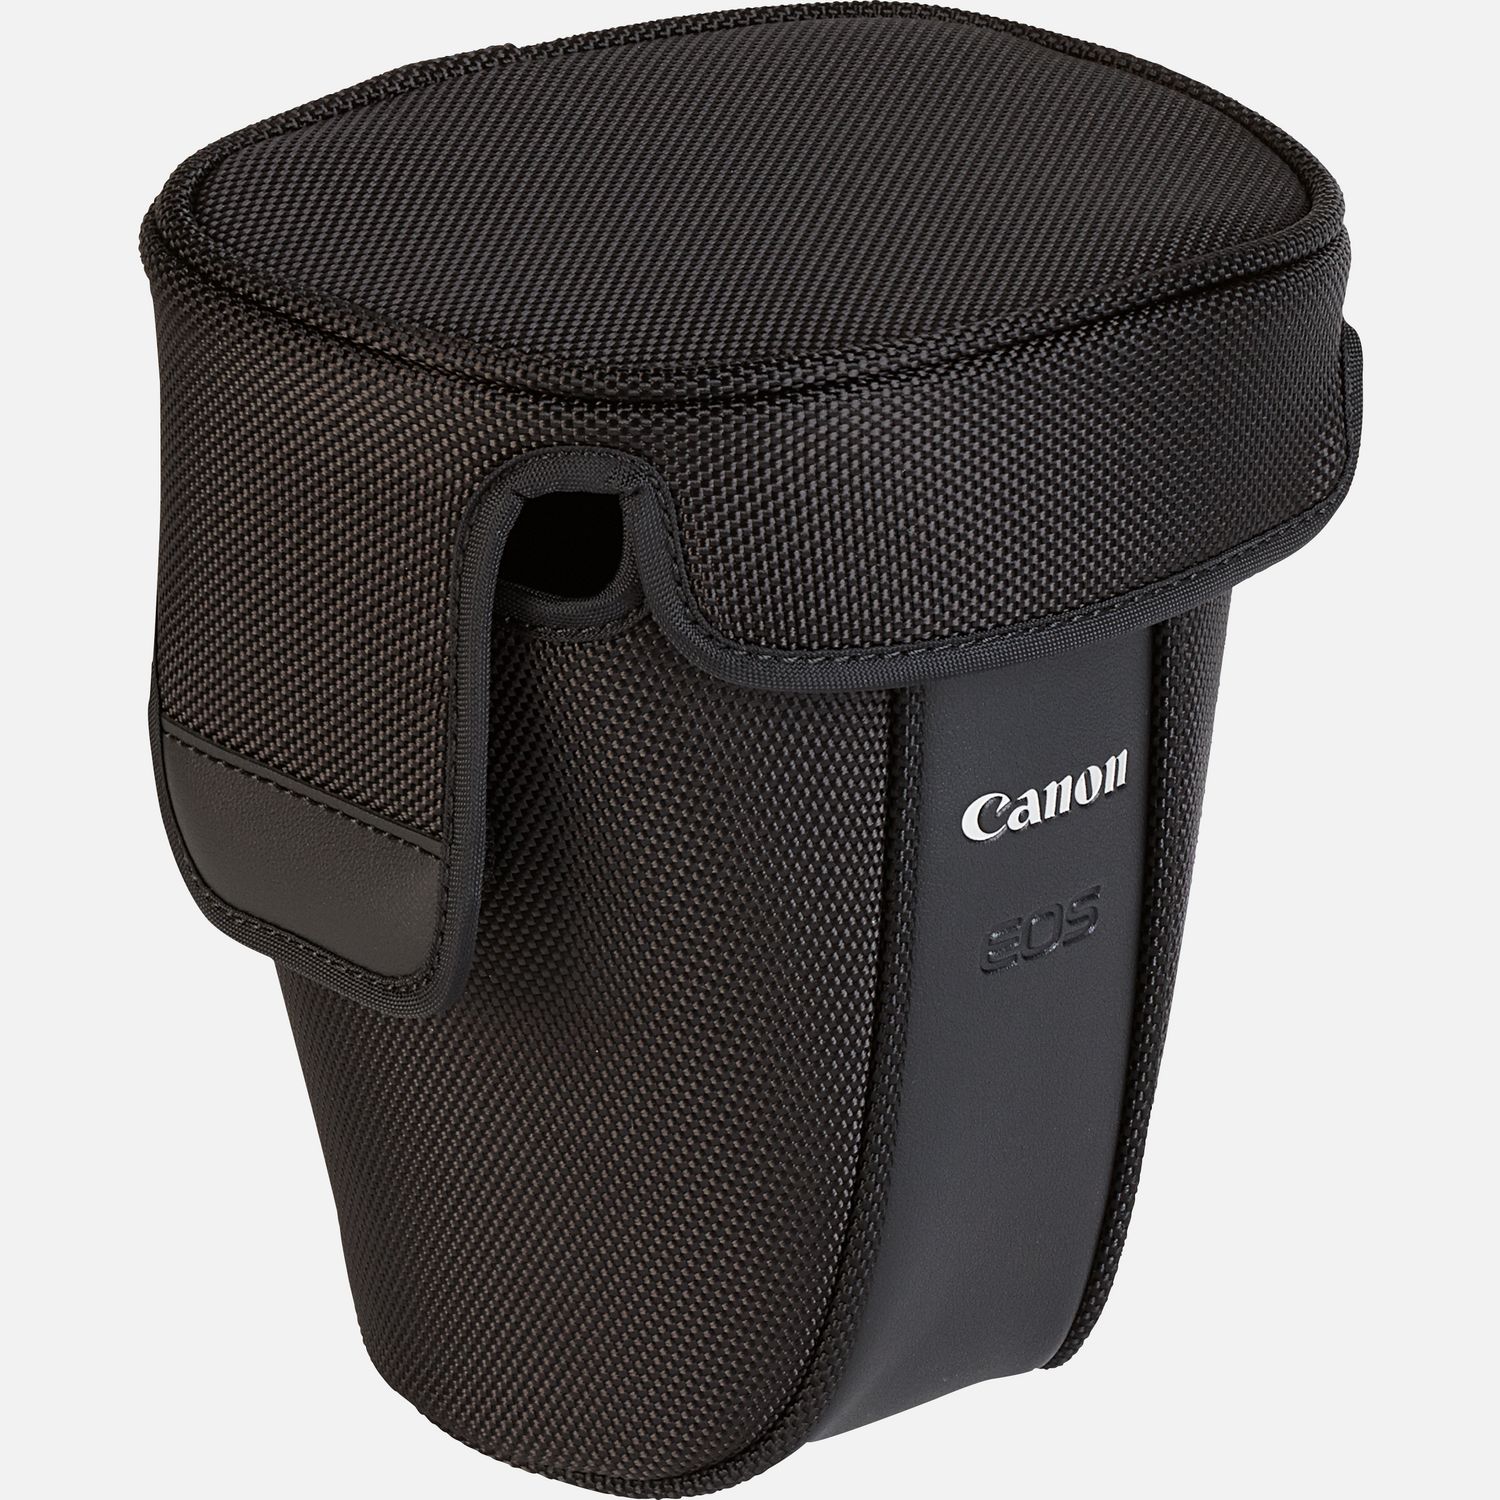 Mit dieser krftigen Kameratasche schtzt du deine EOS 100D. Dank der kompakten Abmessungen lsst sie sich bequem verstauen und schtzt deine DSLR und das angesetzte Objektiv. Das weiche Innenfutter schtzt vor kleinen Sten und vor Kratzern, wenn du unterwegs bist.  Vorteile      Krftige Kameratasche aus Leder fr deine EOS 100D          In diese Kameratasche passt die Kamera mit einem angesetzten 18-55mm-Objektiv          Robustes Material fr Komfort und modische Eleganz          Weiches Innenfutter zum Schutz von Kamera und Objektiv          Lieferumfang       EH25-L Krftige Tasche, Schwarz            Kompatibilitt       EOS 100D